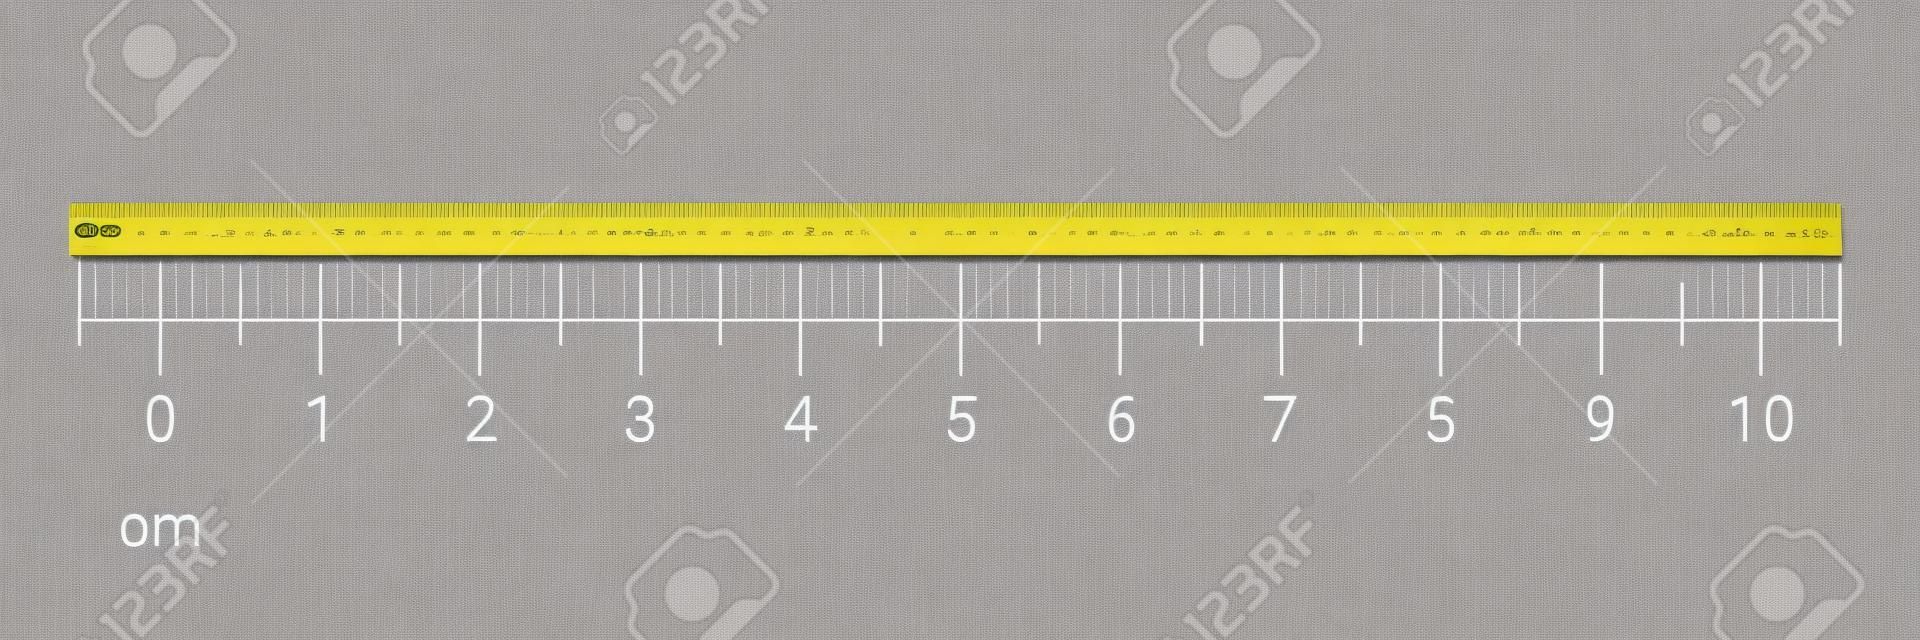 Strumento di misurazione righello da 10 centimetri con scala numerica. Grafico cm vettoriale con sistema a griglia millimetrica